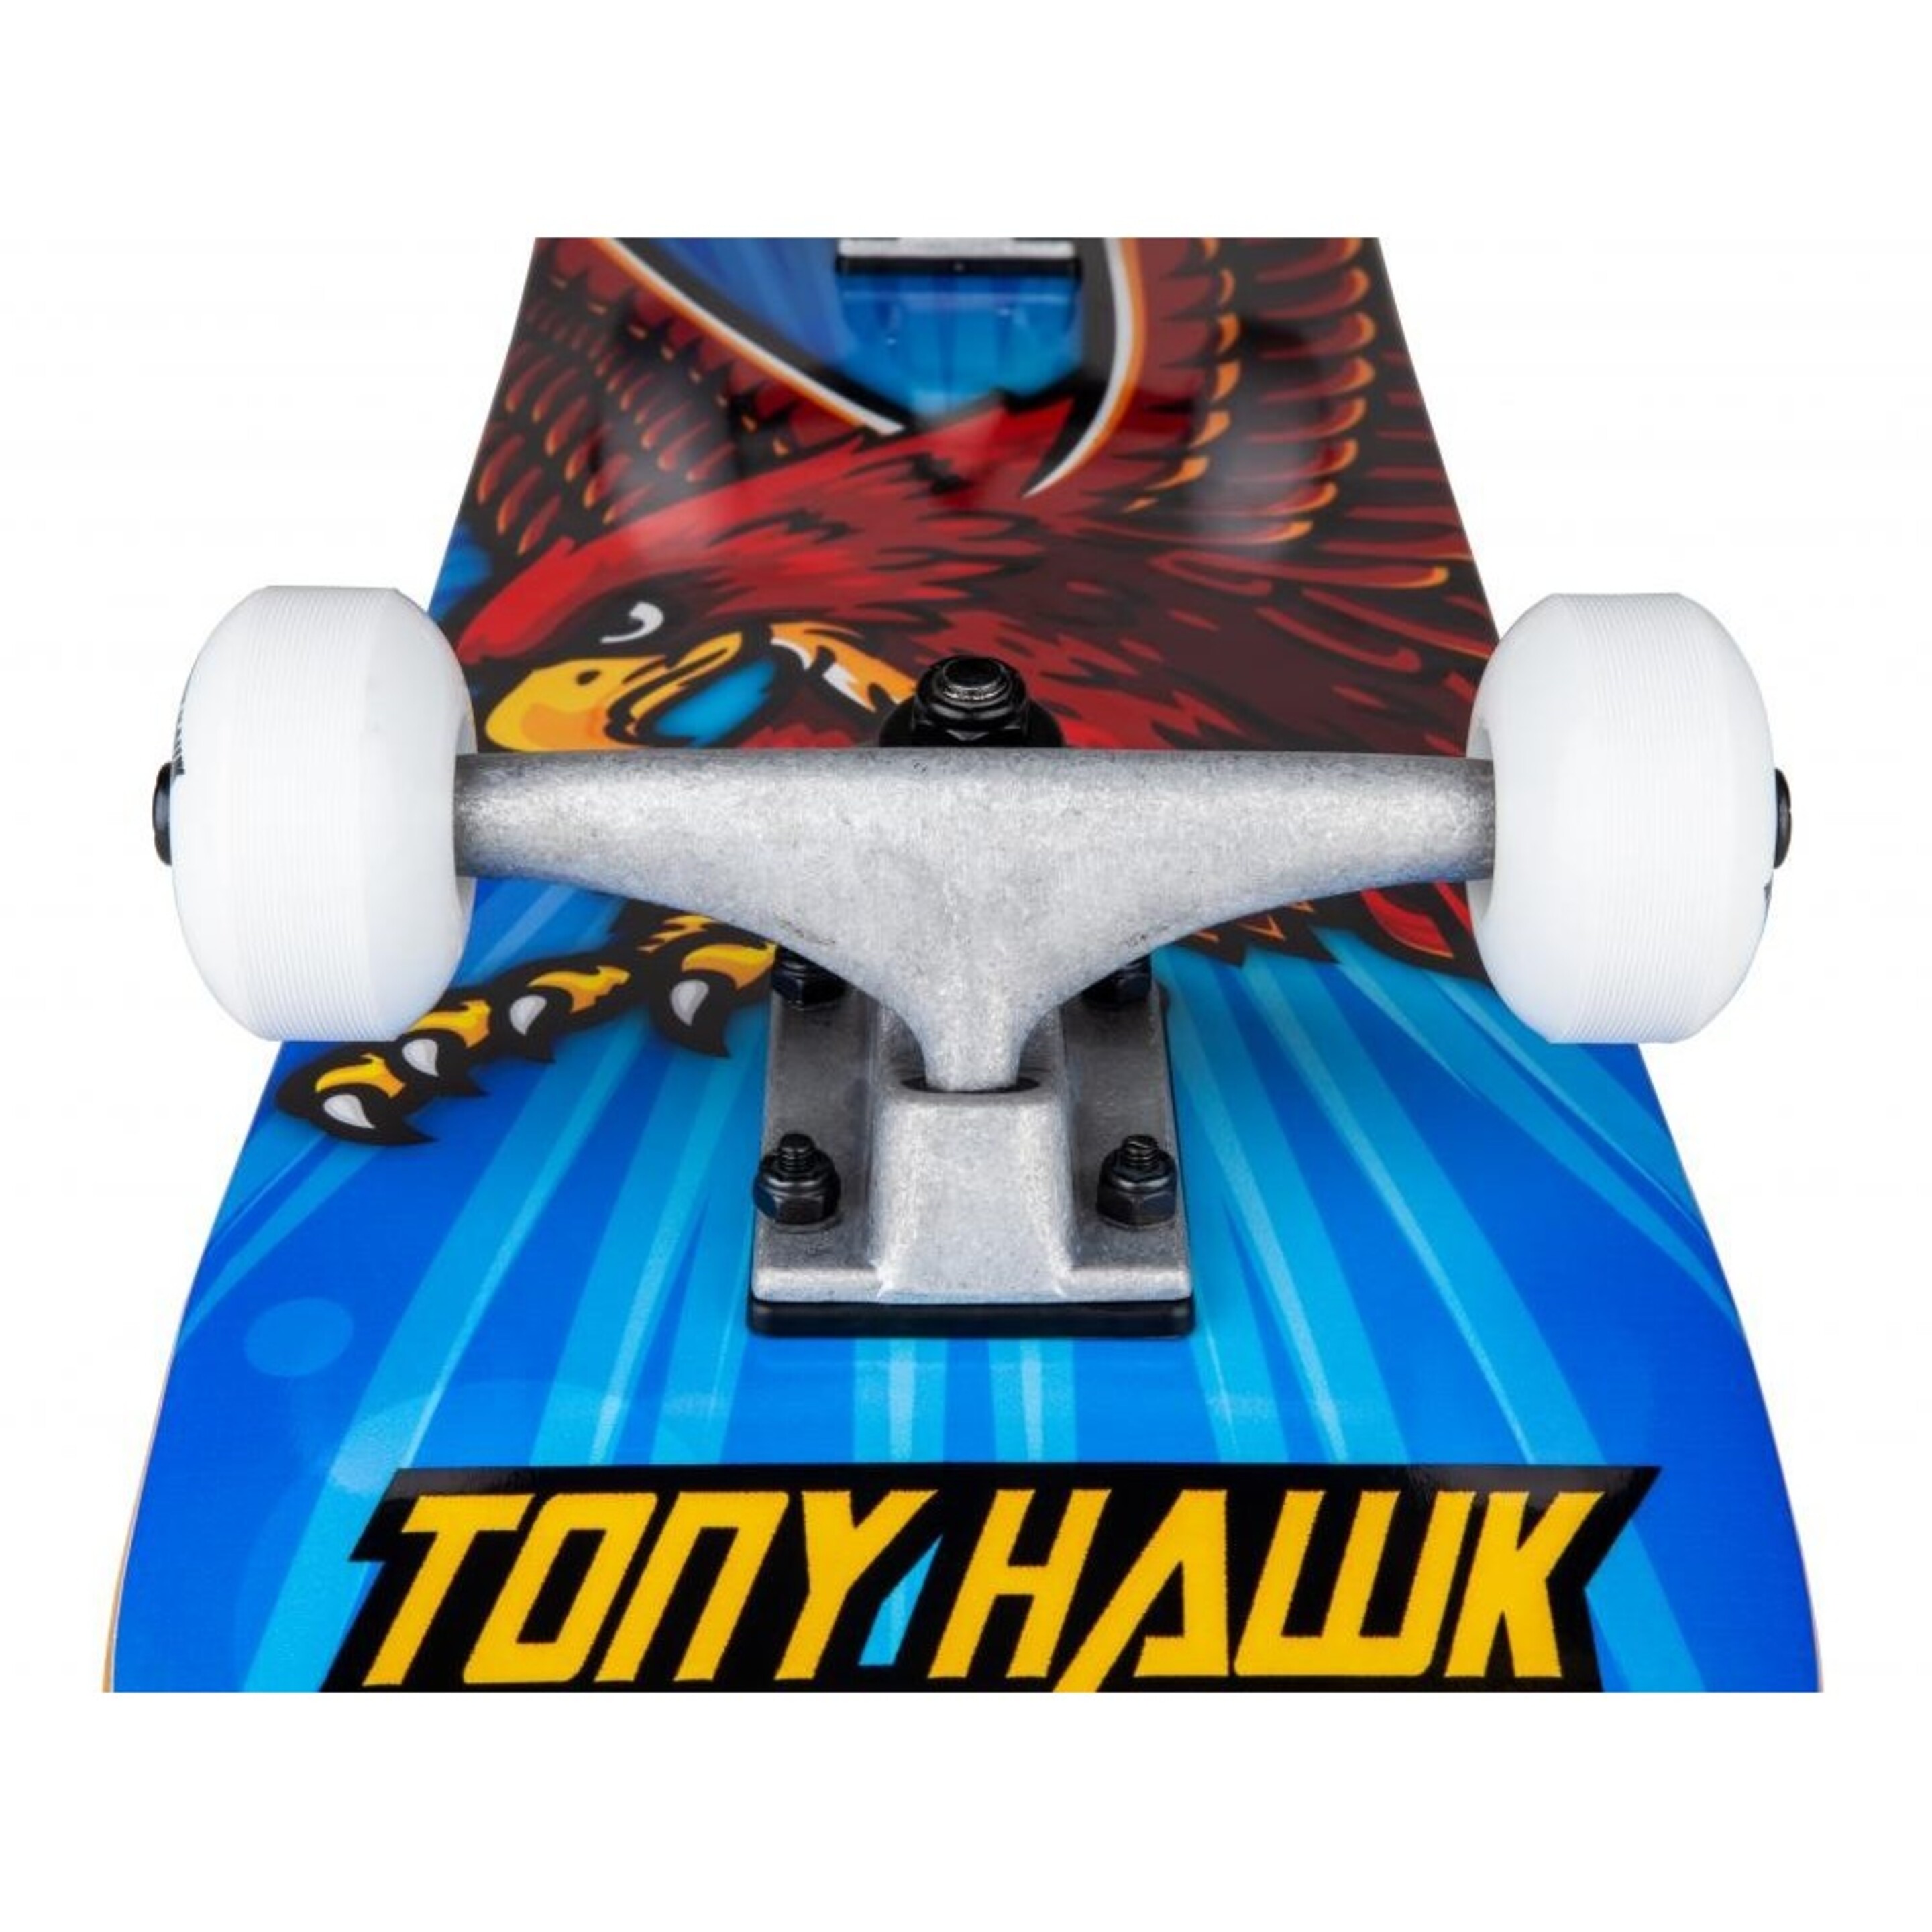 Skate Completo Tony Hawk Ss 180 King Hawk Mini 7.375" - Azul  MKP